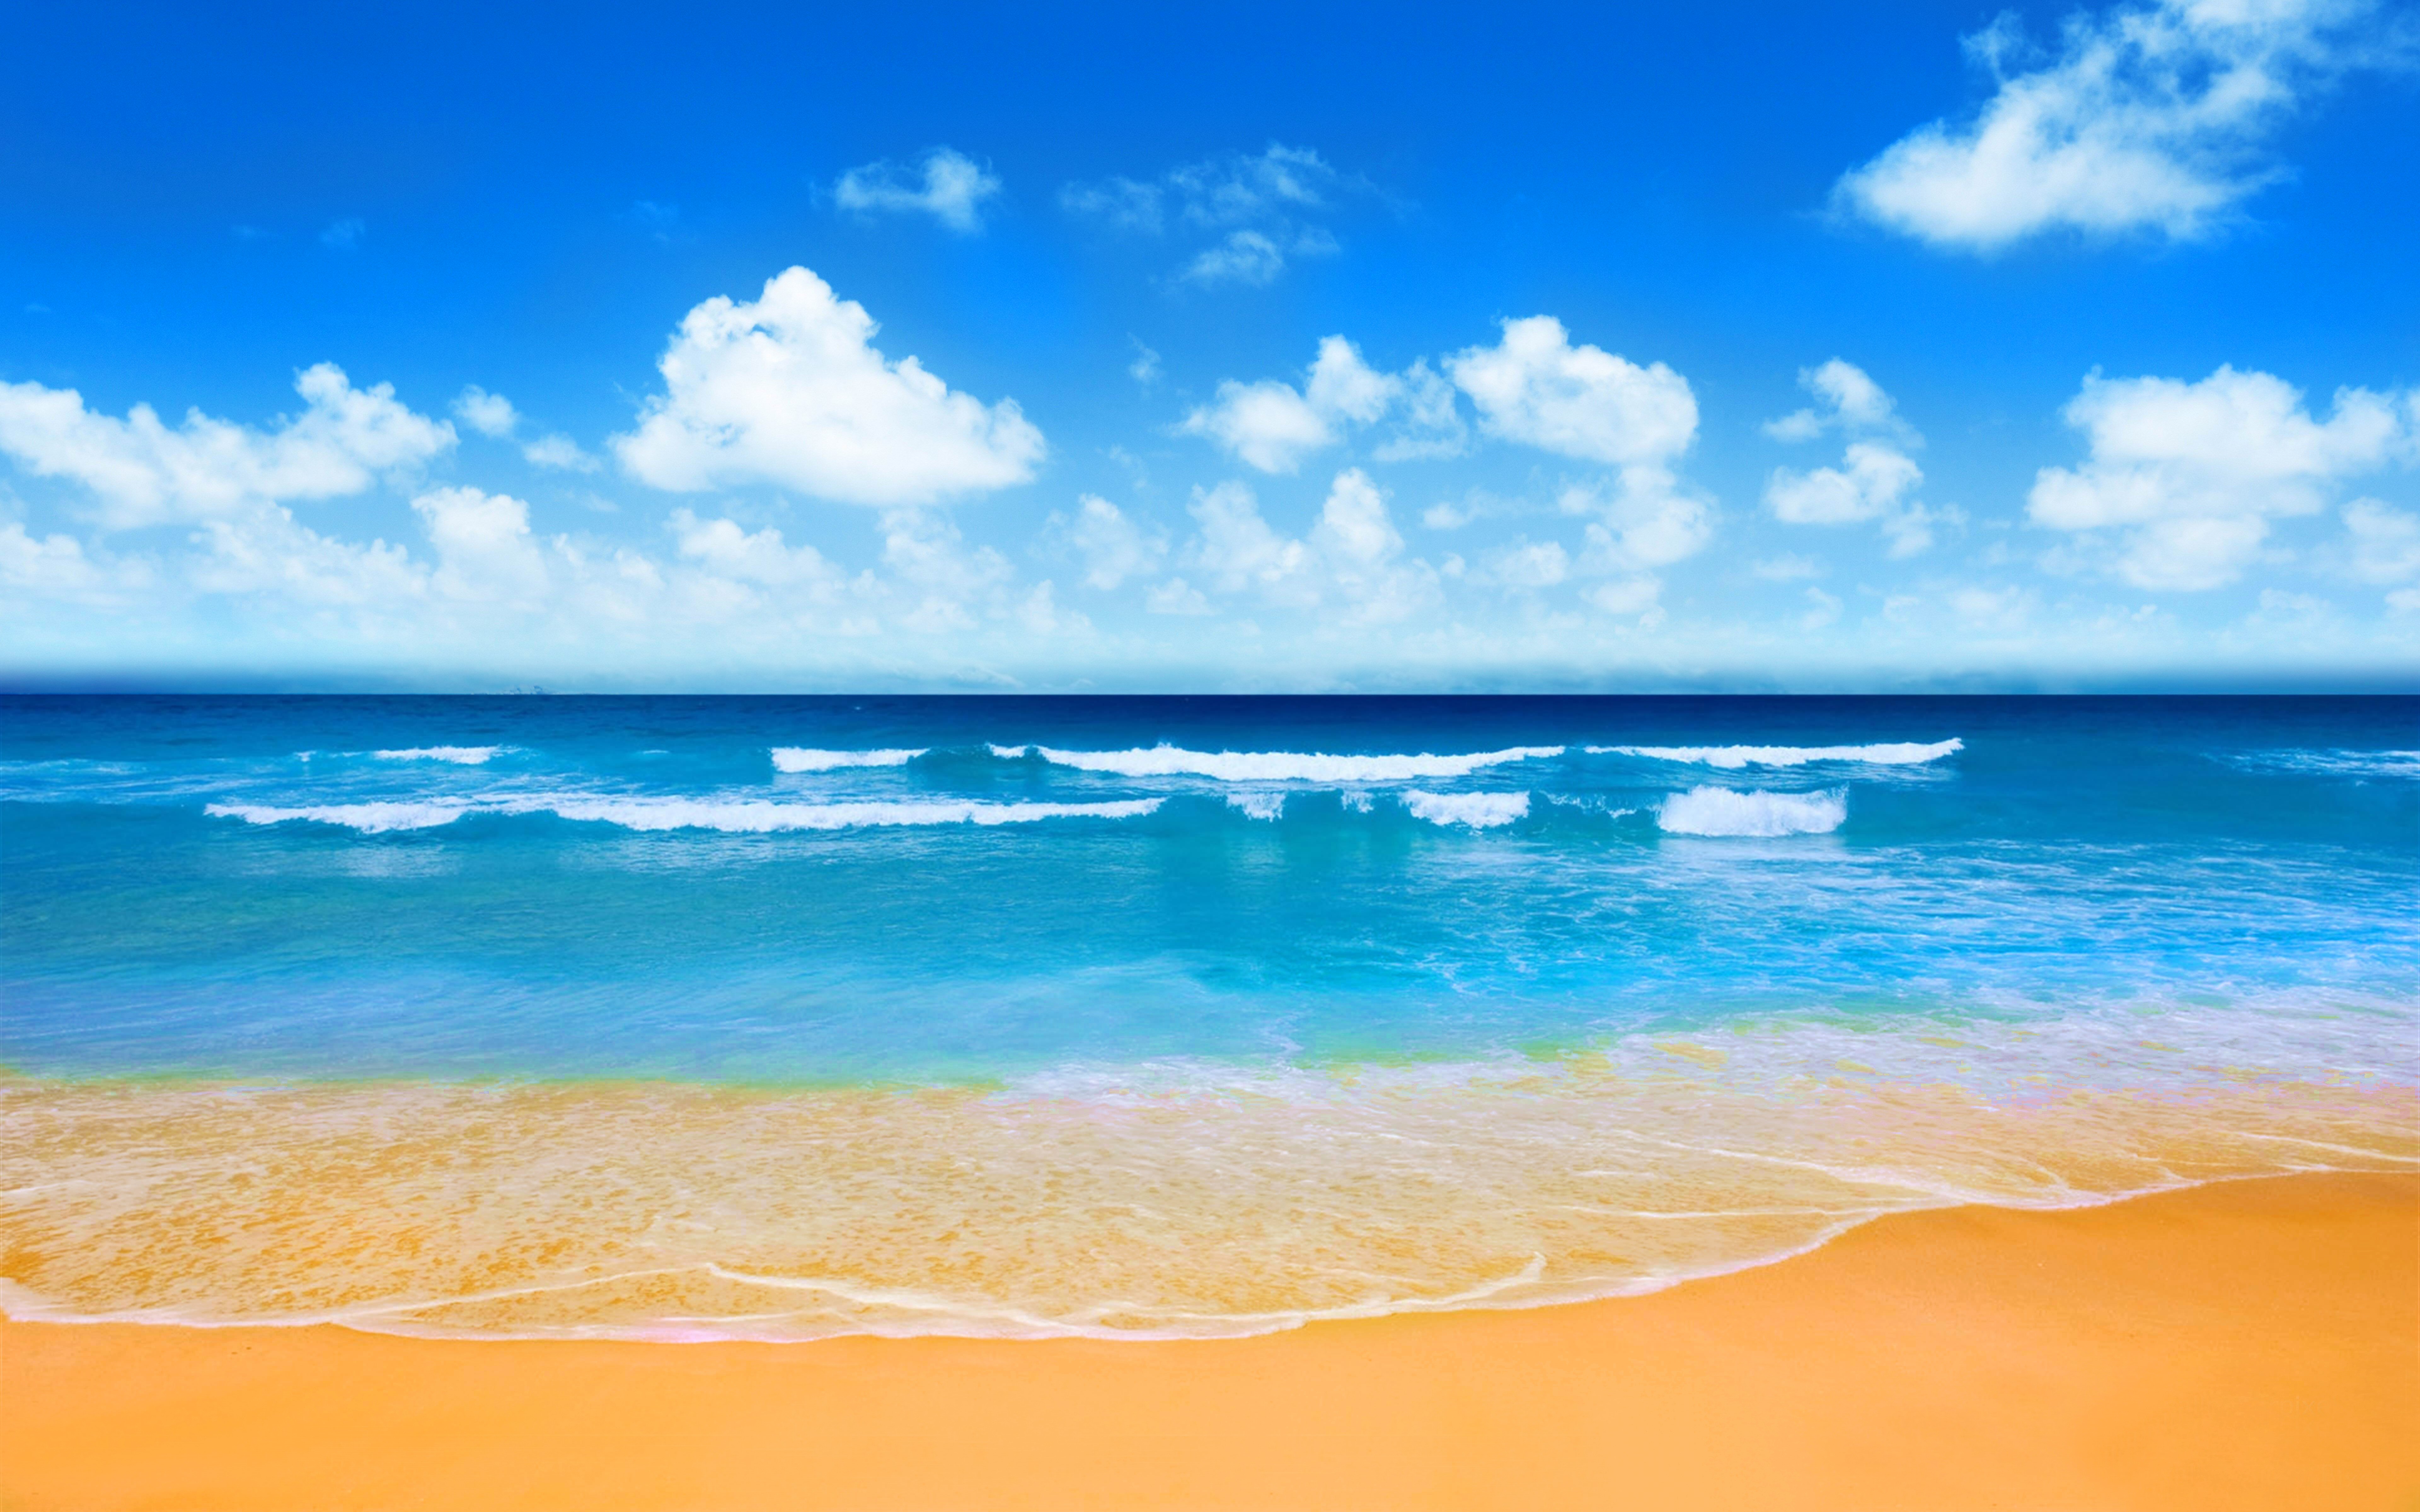 Beach: Với bầu trời xanh thẳm, bãi biển trải dài và những ngọn sóng nhè nhẹ, bãi biển sẽ là năng lượng và yên tĩnh cho bất kỳ ai cần nó. Hãy đắm mình trong không gian hòa mình vào sóng gió, quên đi những bộn bề trong cuộc sống và bùng nổ niềm đam mê trên bãi biển.